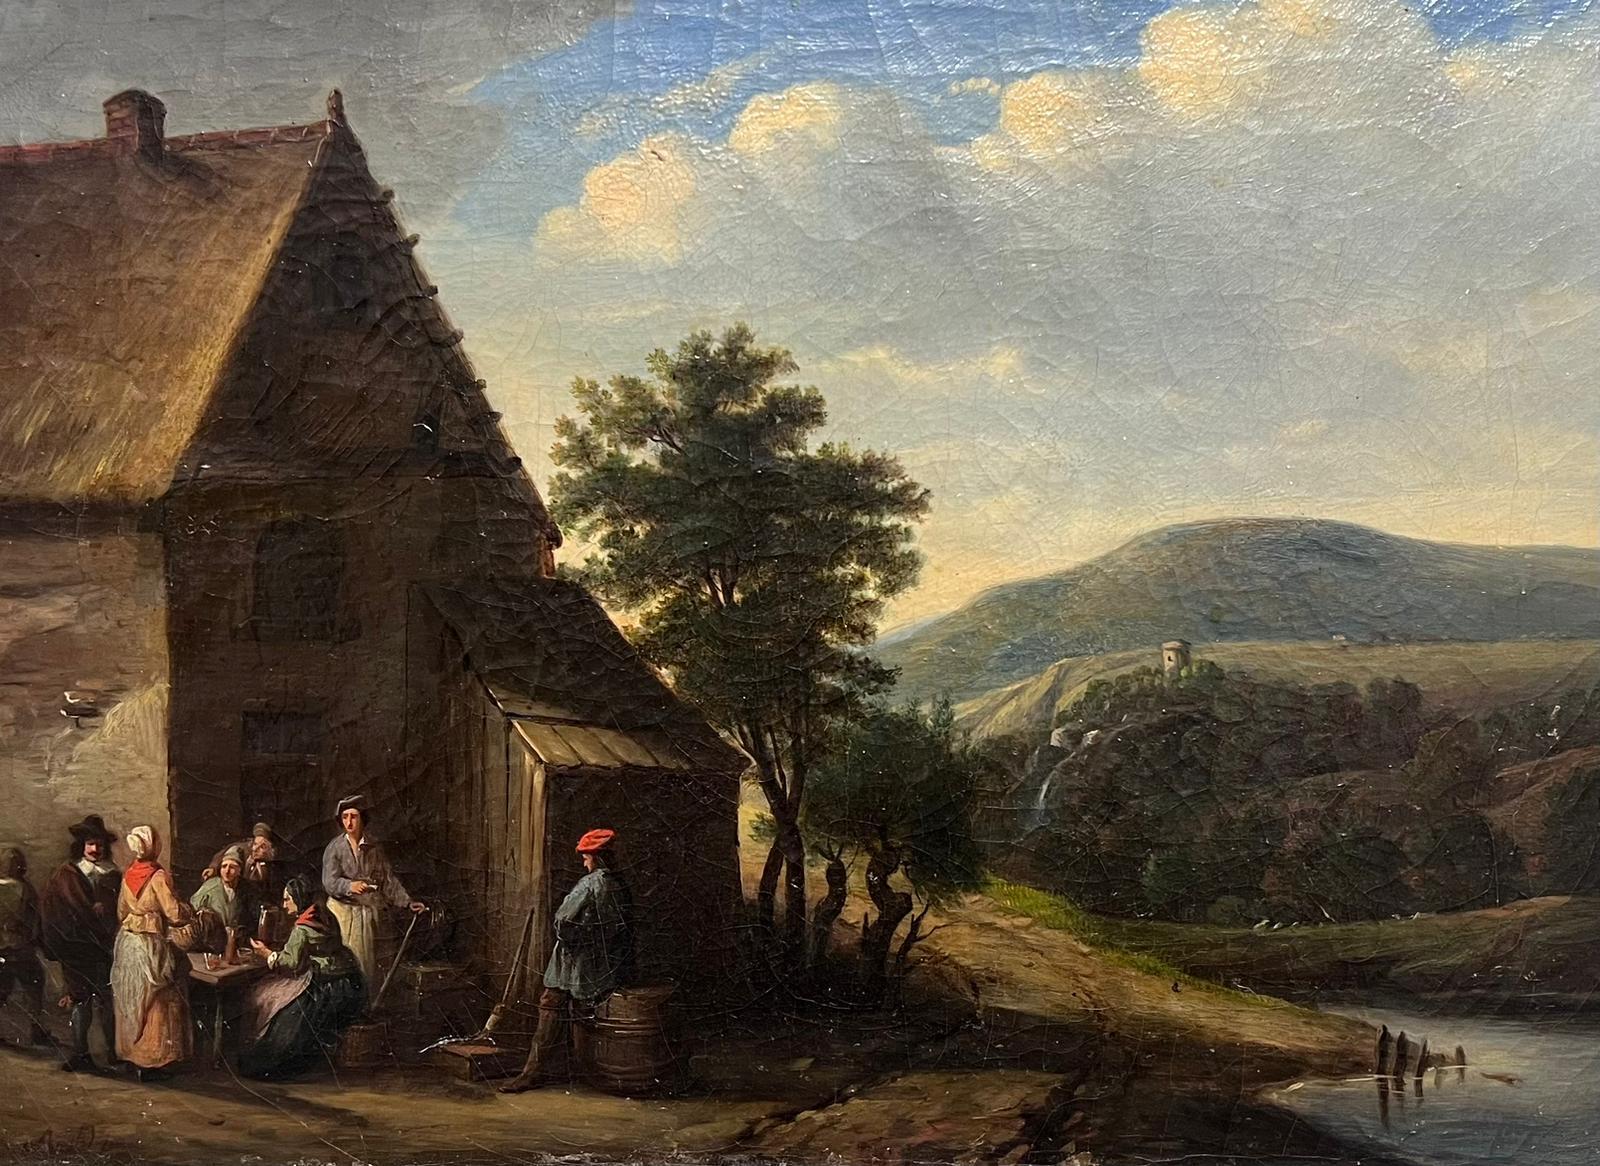 Figures chevauchant à l'extérieur d'une taverne de village dans un paysage de montagne, huile d'époque 